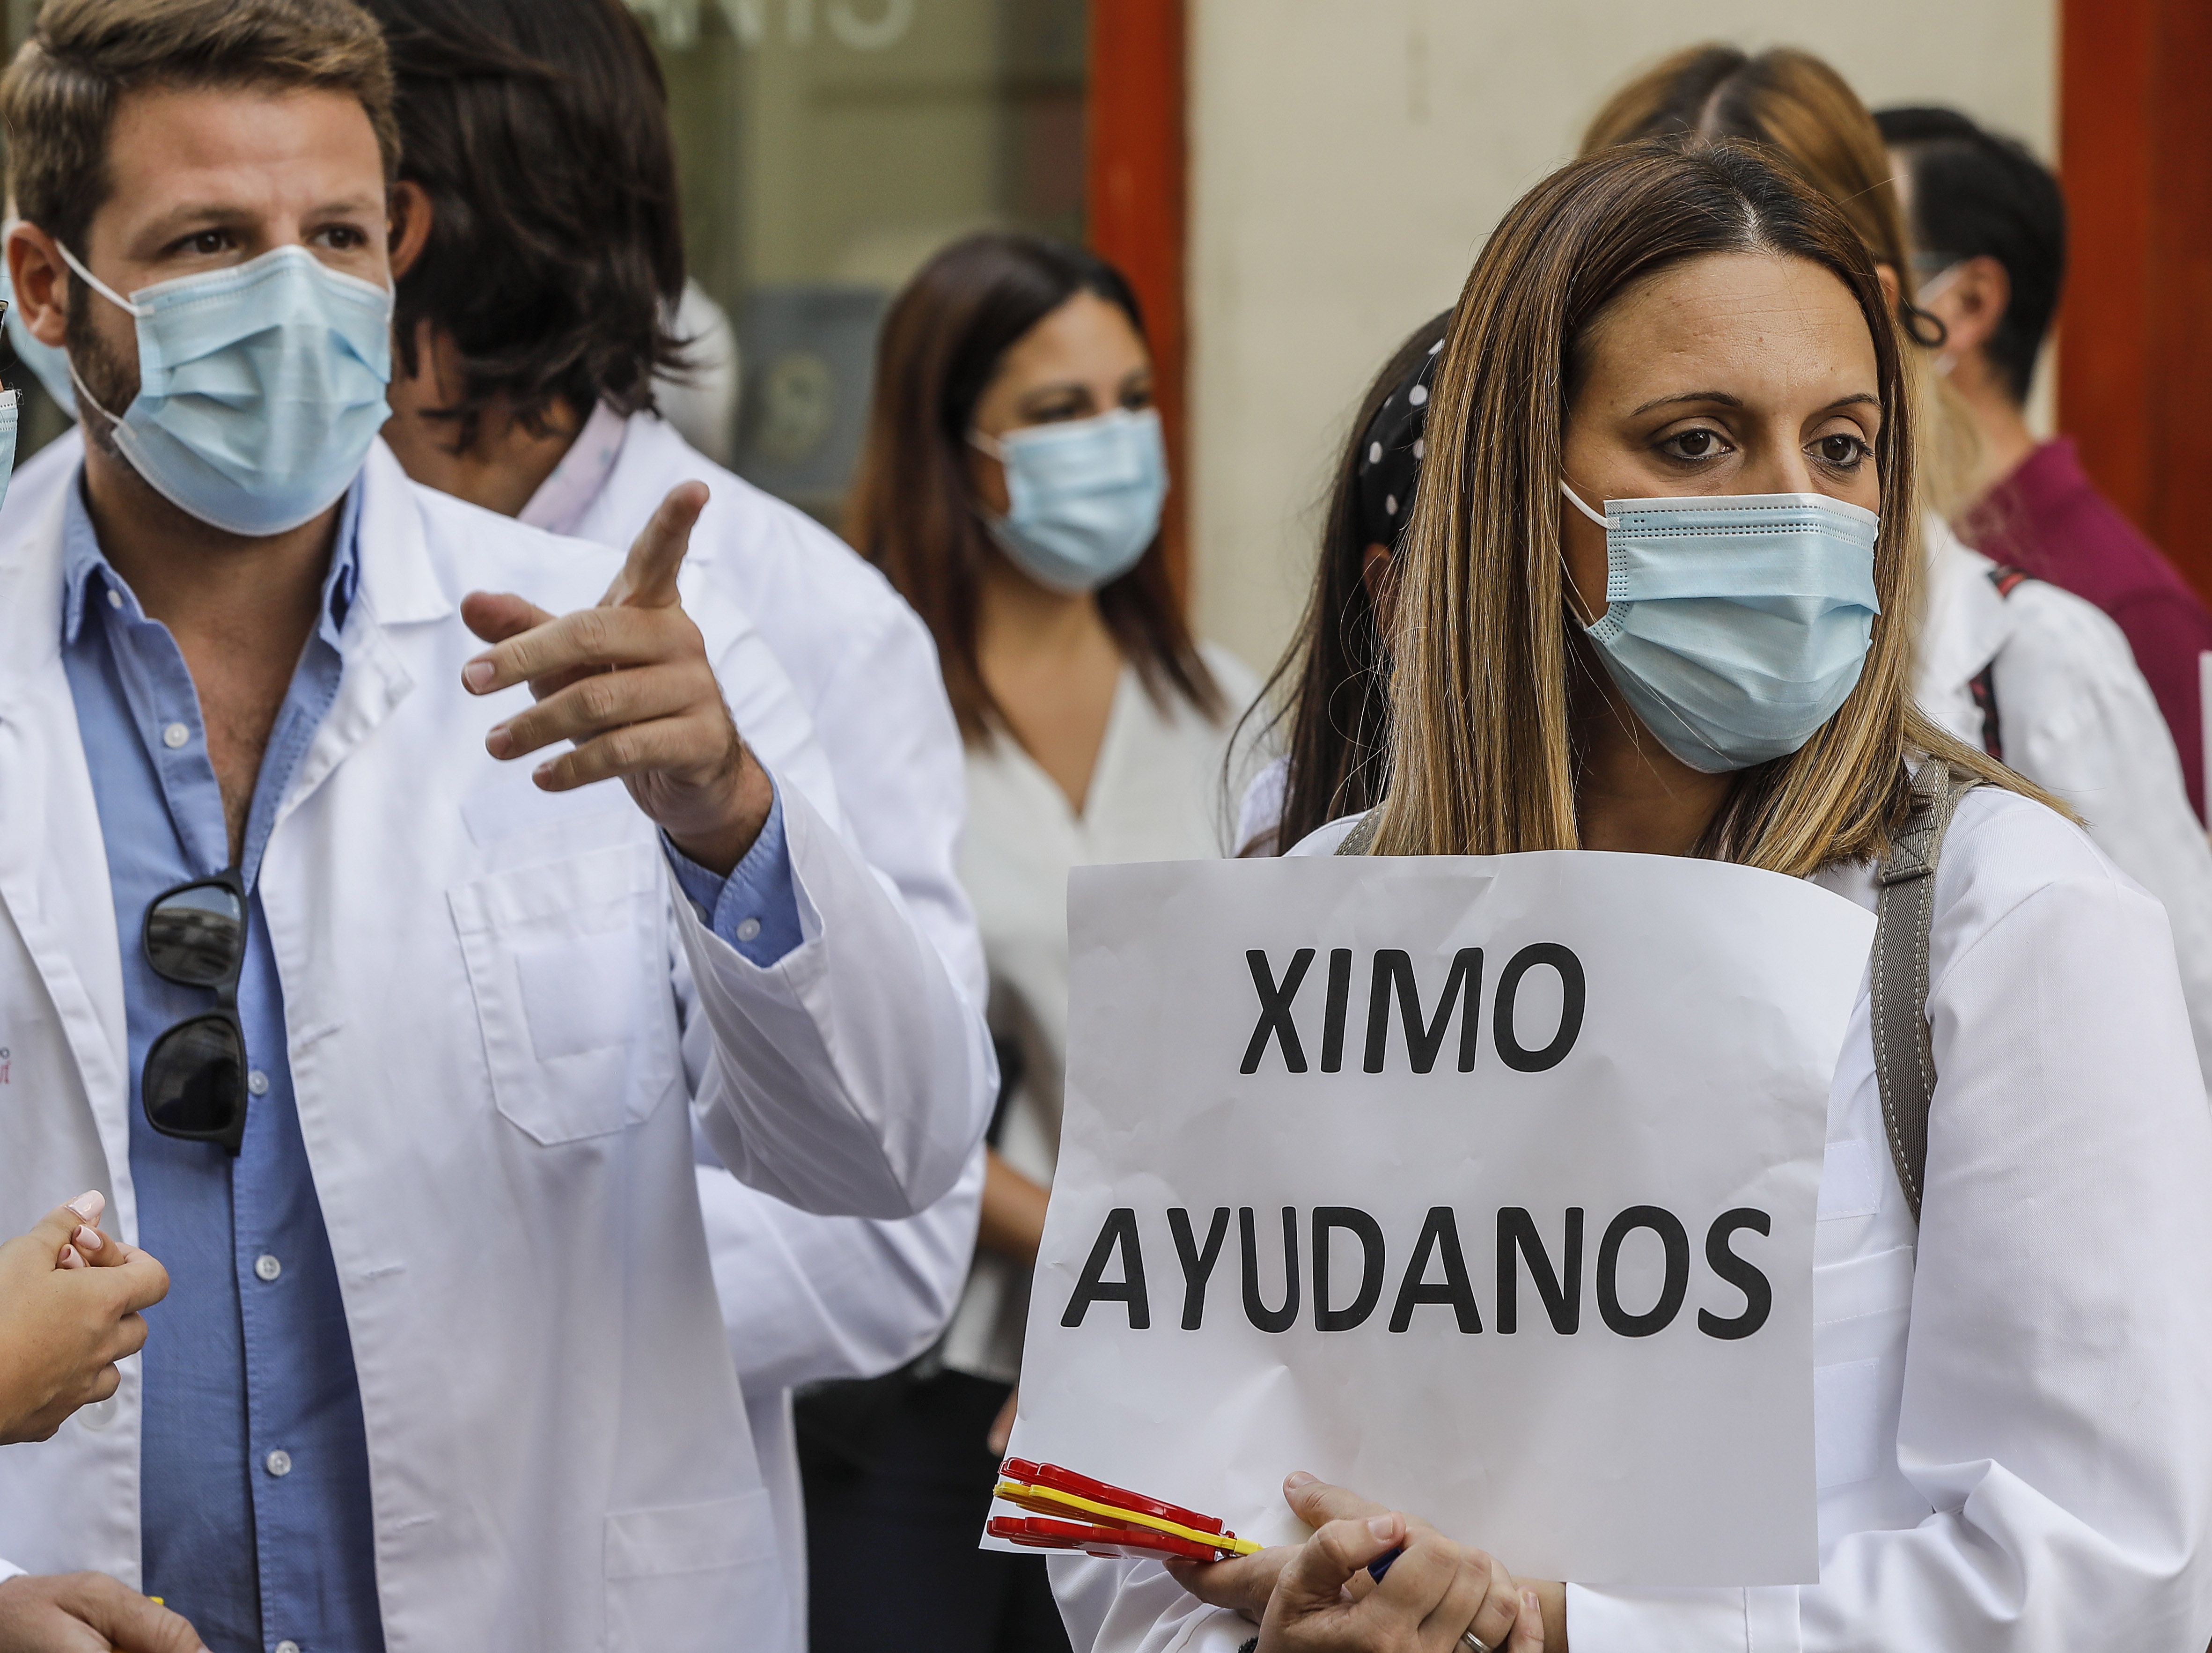 Los sanitarios valencianos están saturados: "Es peor que en abril, hasta los infartos los desviamos"